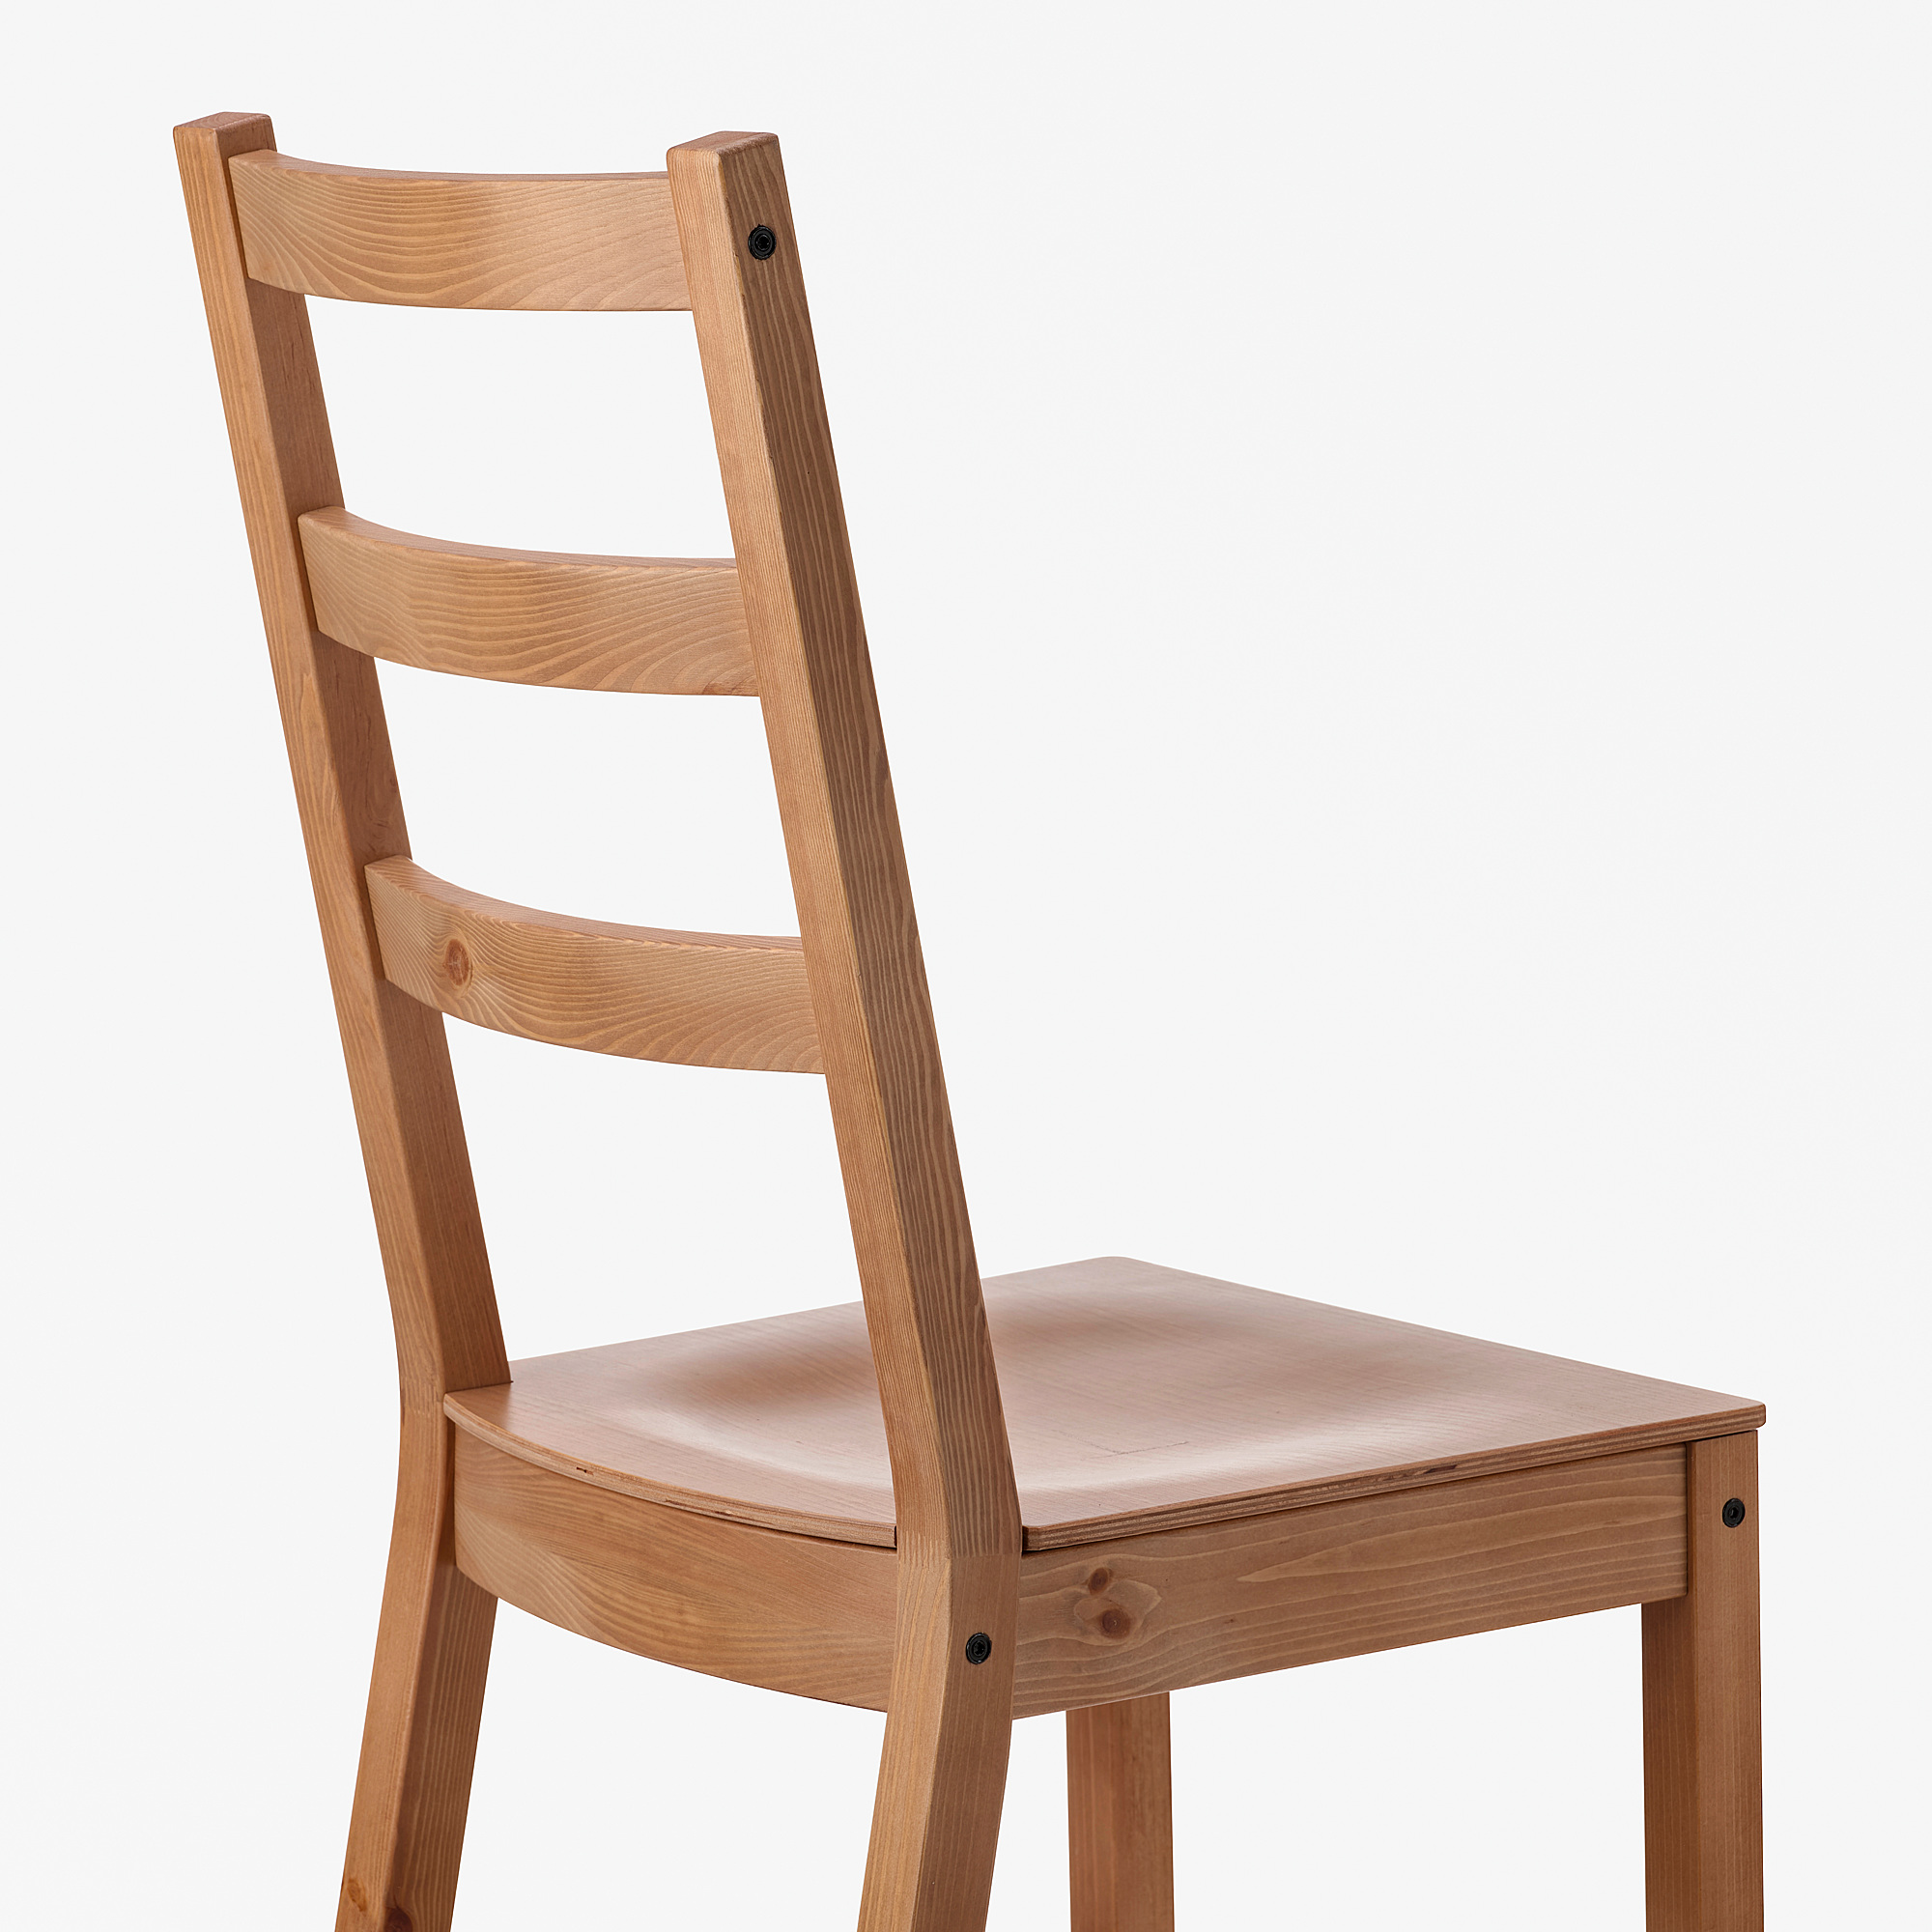 NORDVIKEN chair